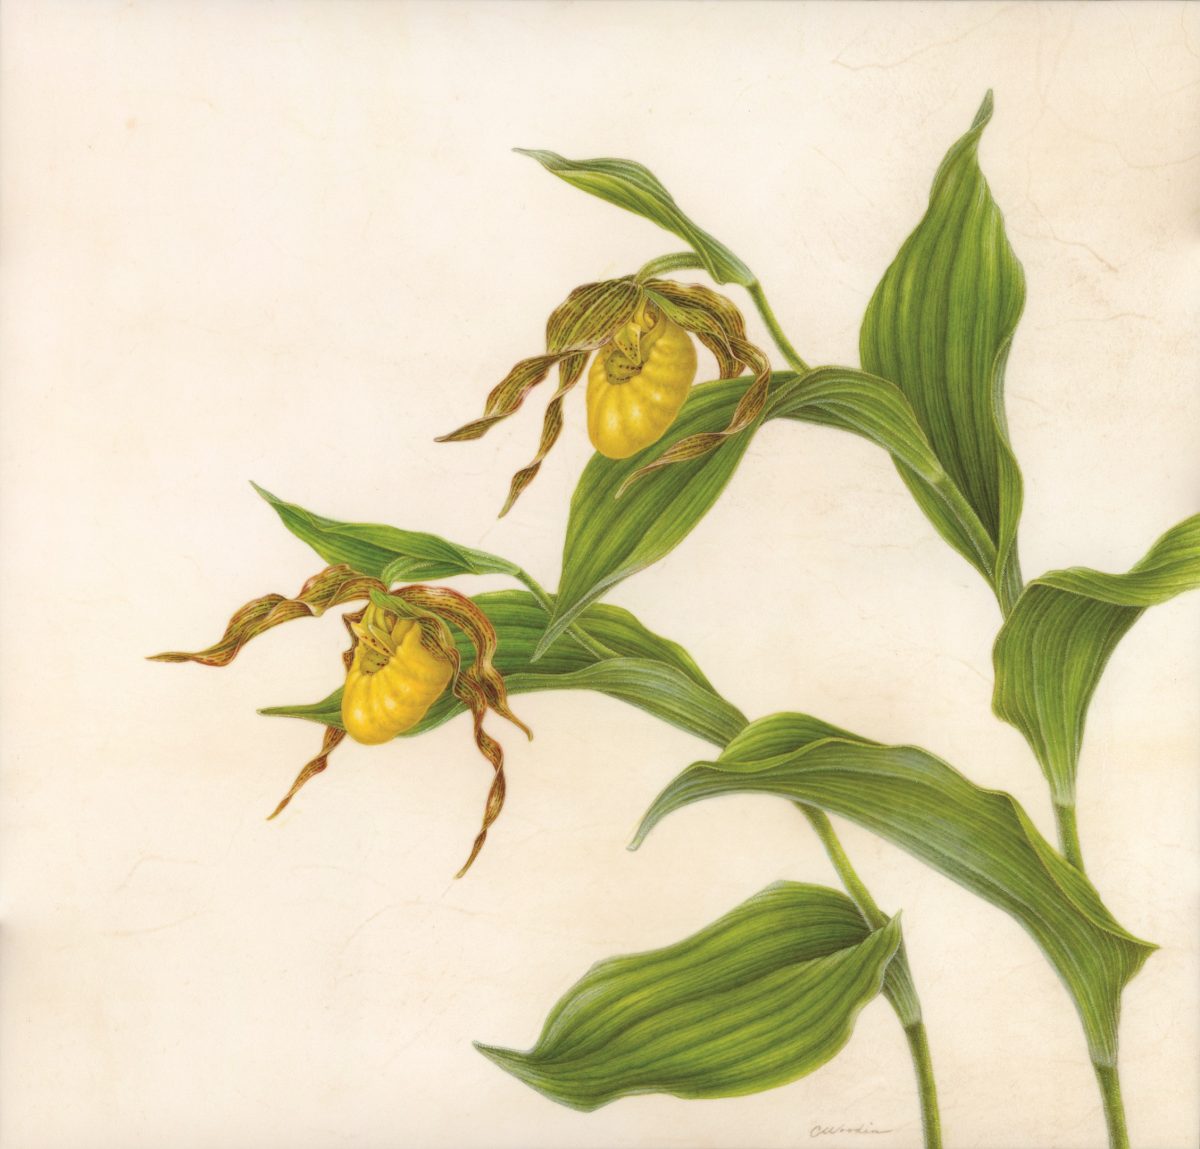 Tranh minh họa “Hoa Lan Hài Vàng (Cypripedium parviflorum var. pubescens)” của họa sĩ Carol Woodin, năm 2017. Tranh màu nước trên giấy da thuộc phủ trên bảng vẽ, kích cỡ 15 inch x 15 ½ inch. (Ảnh: Carol Woodin)